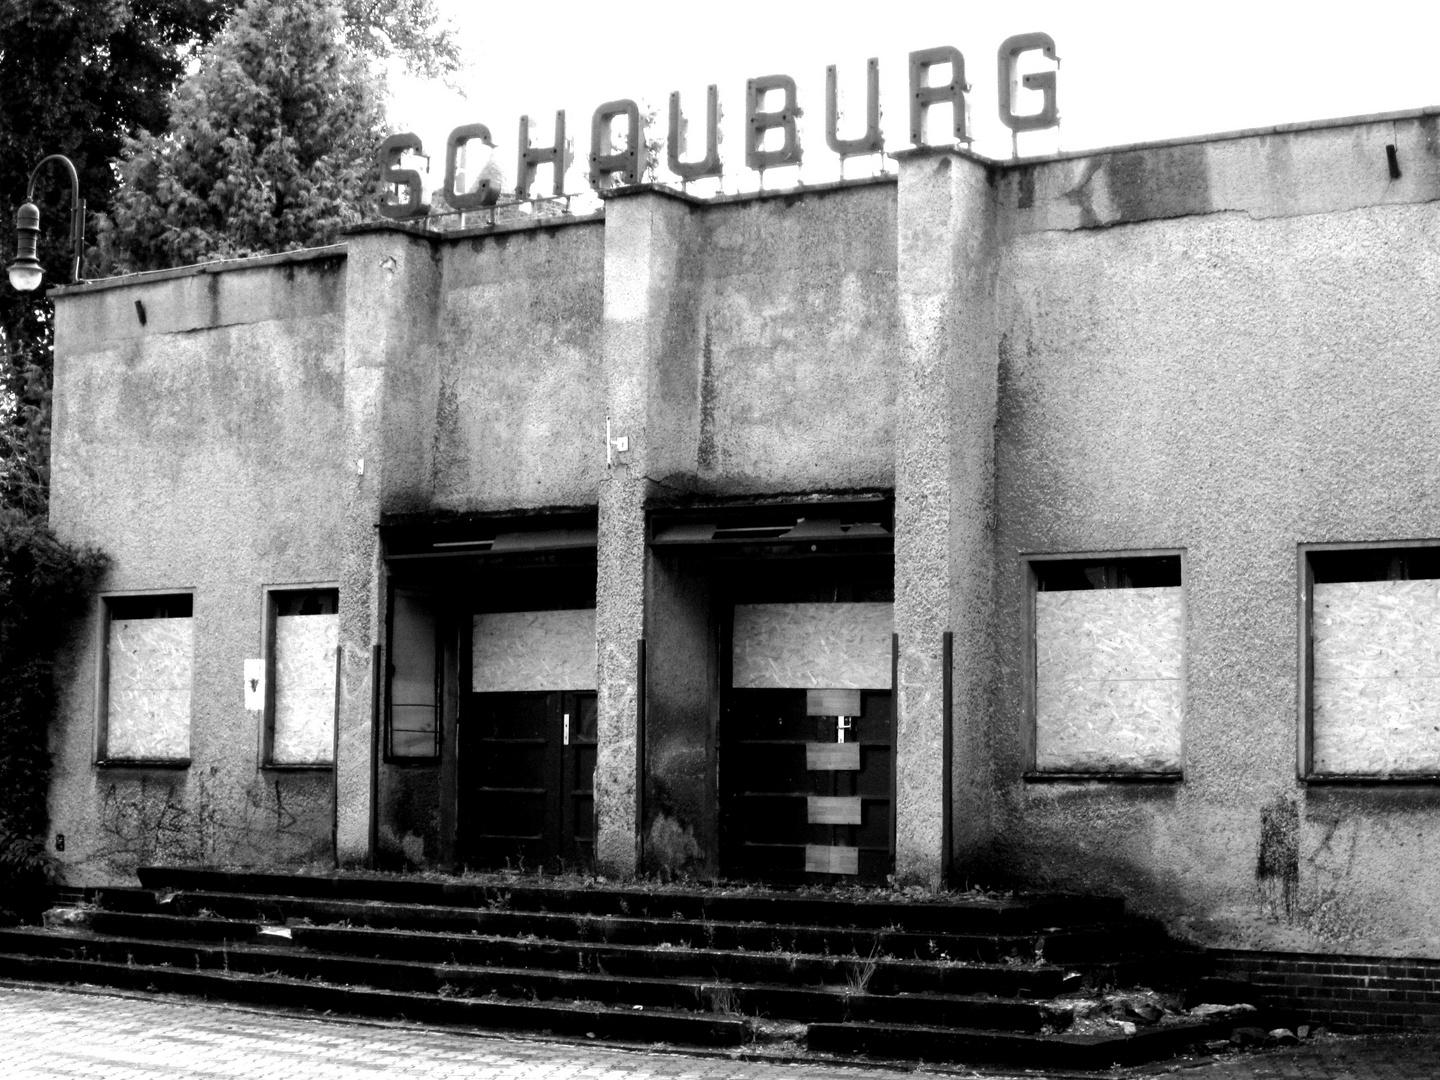 Schauburg